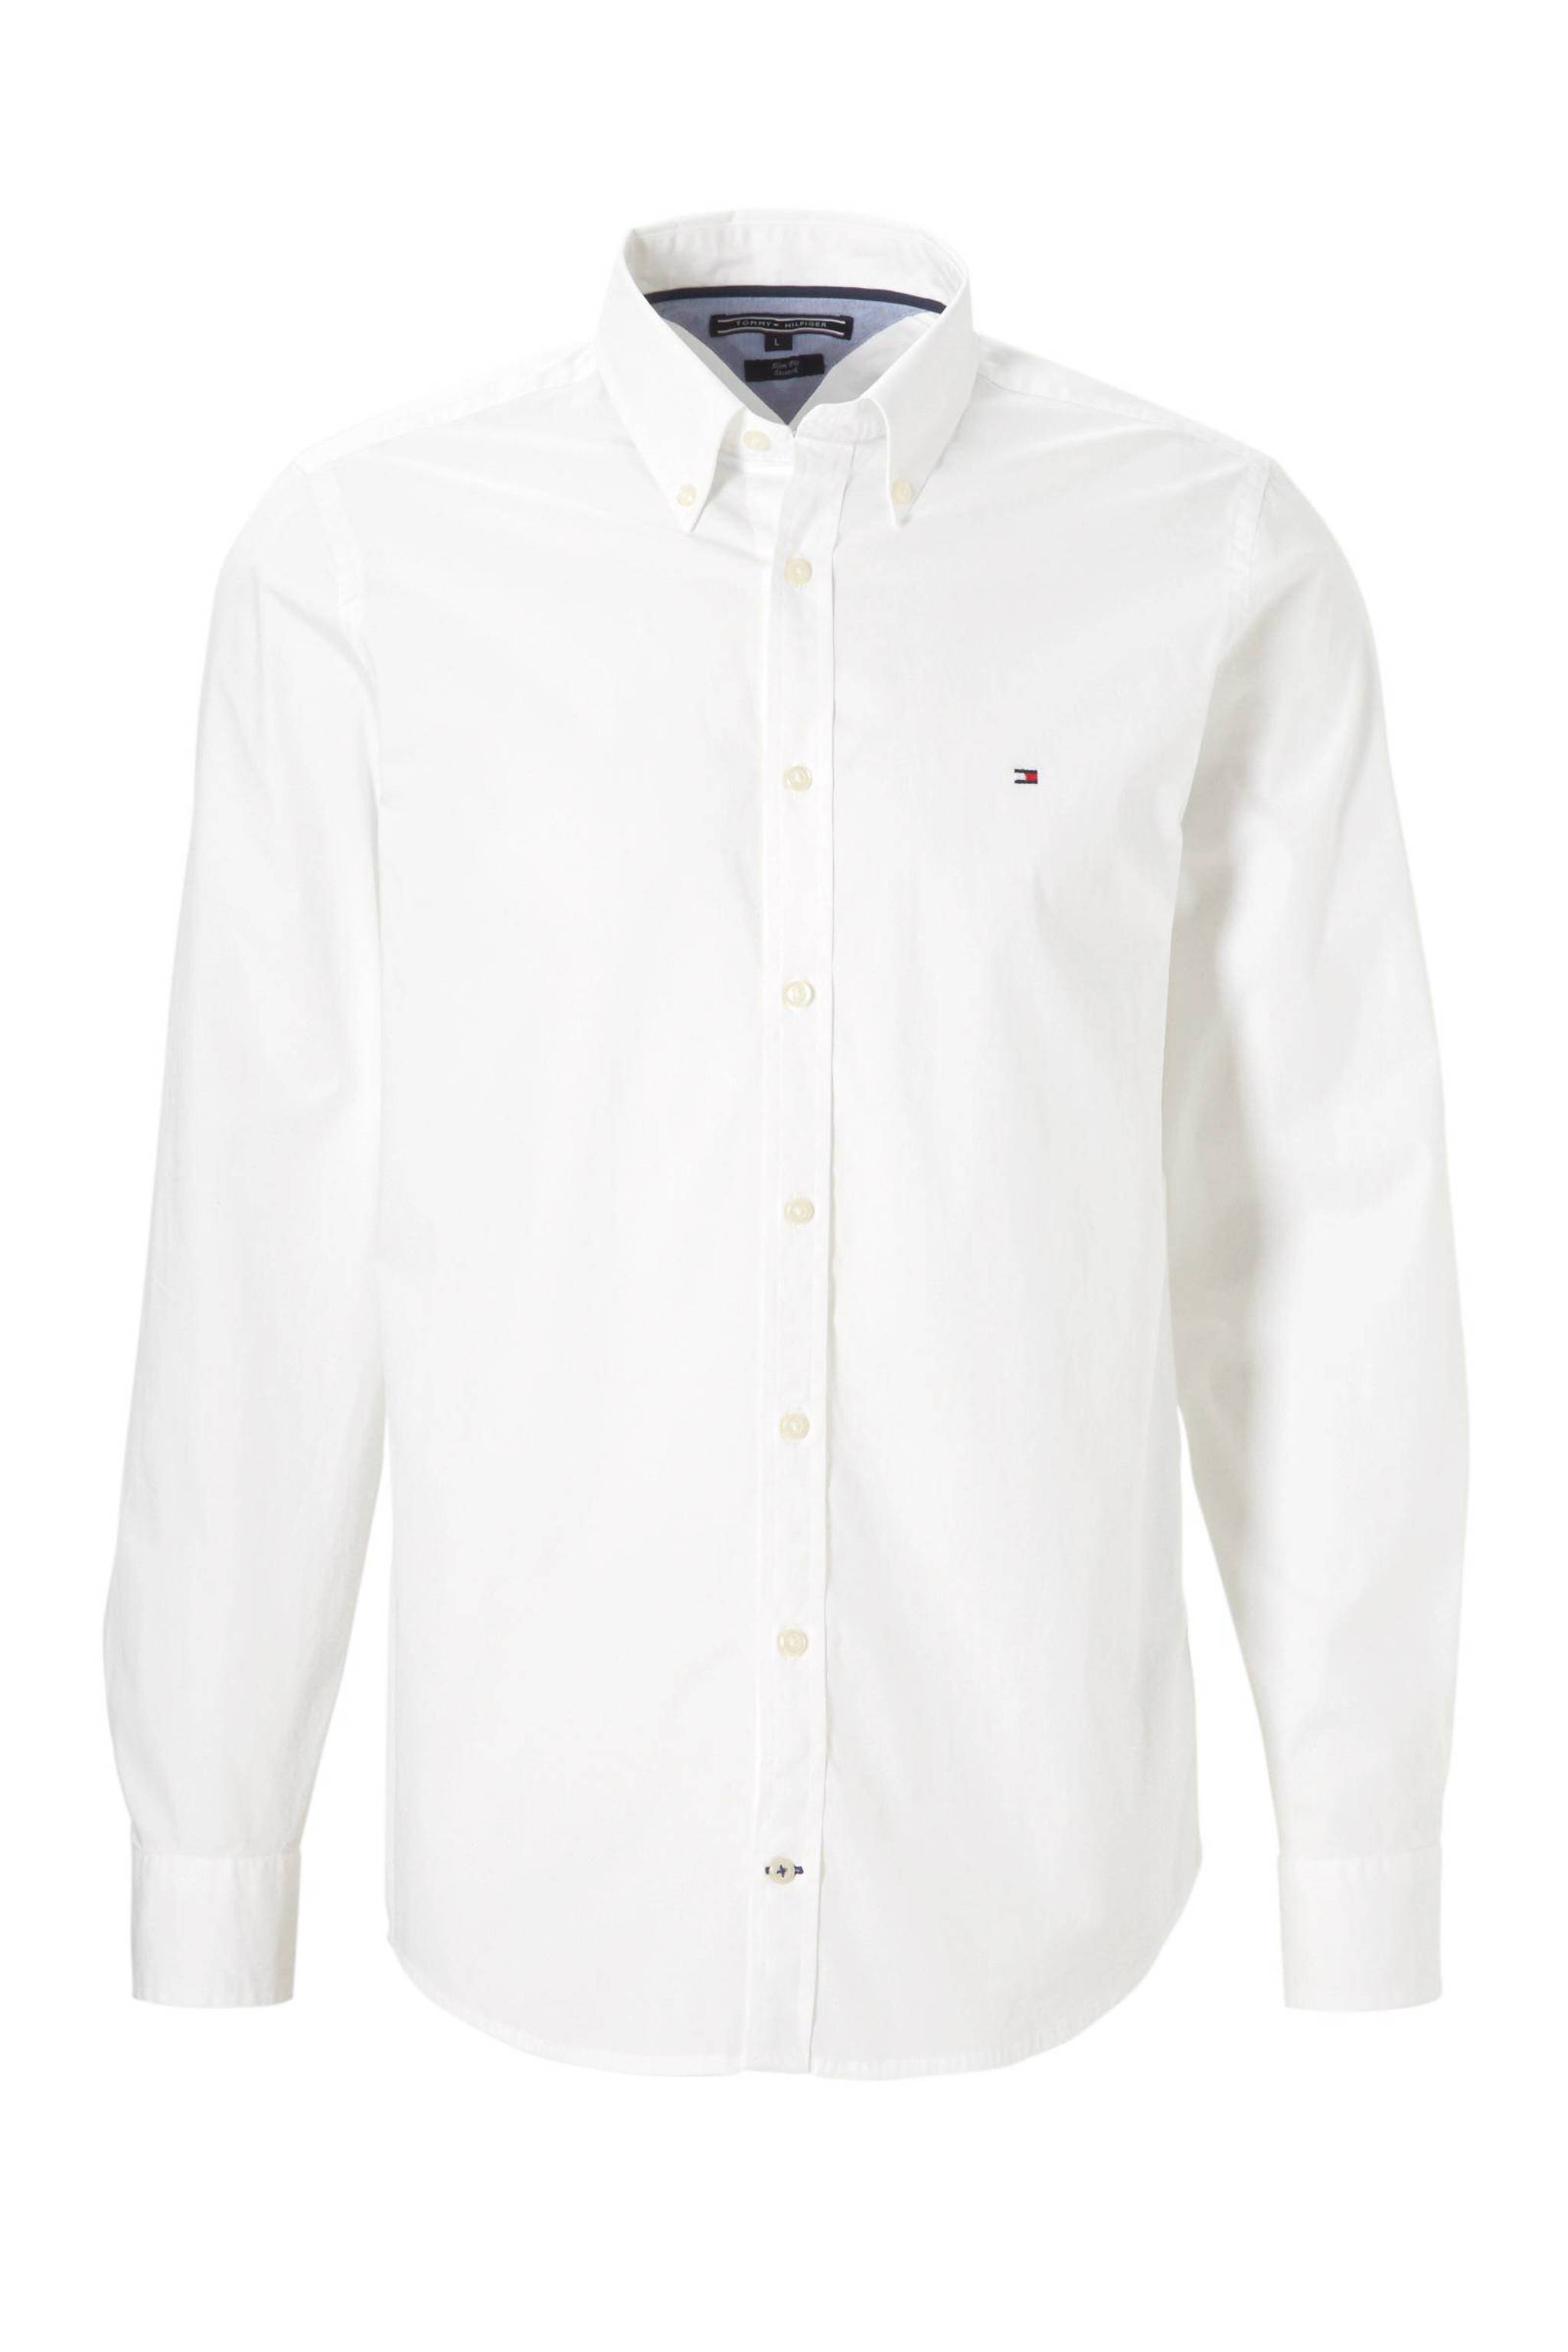 Nationaal volkslied Voorbijganger gordijn Tommy Hilfiger slim fit poplin overhemd wit | wehkamp